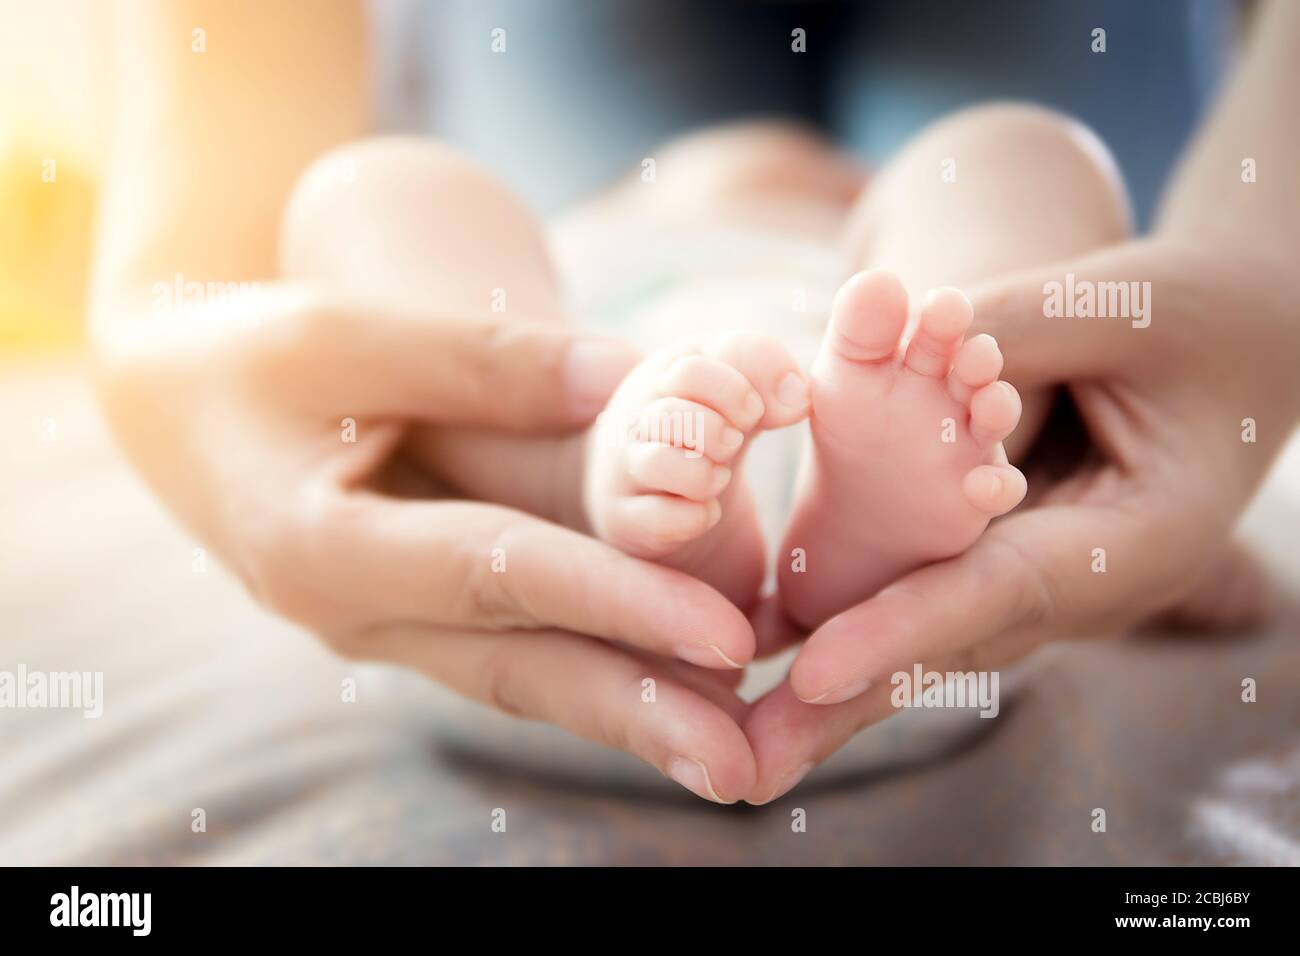 Happy Relationship in Familie Konzept : Neugeborenen Baby Füße in Mutterhand. Eltern halten winzige Füße des Neugeborenen in den Händen mit sanfter Pflege Stockfoto